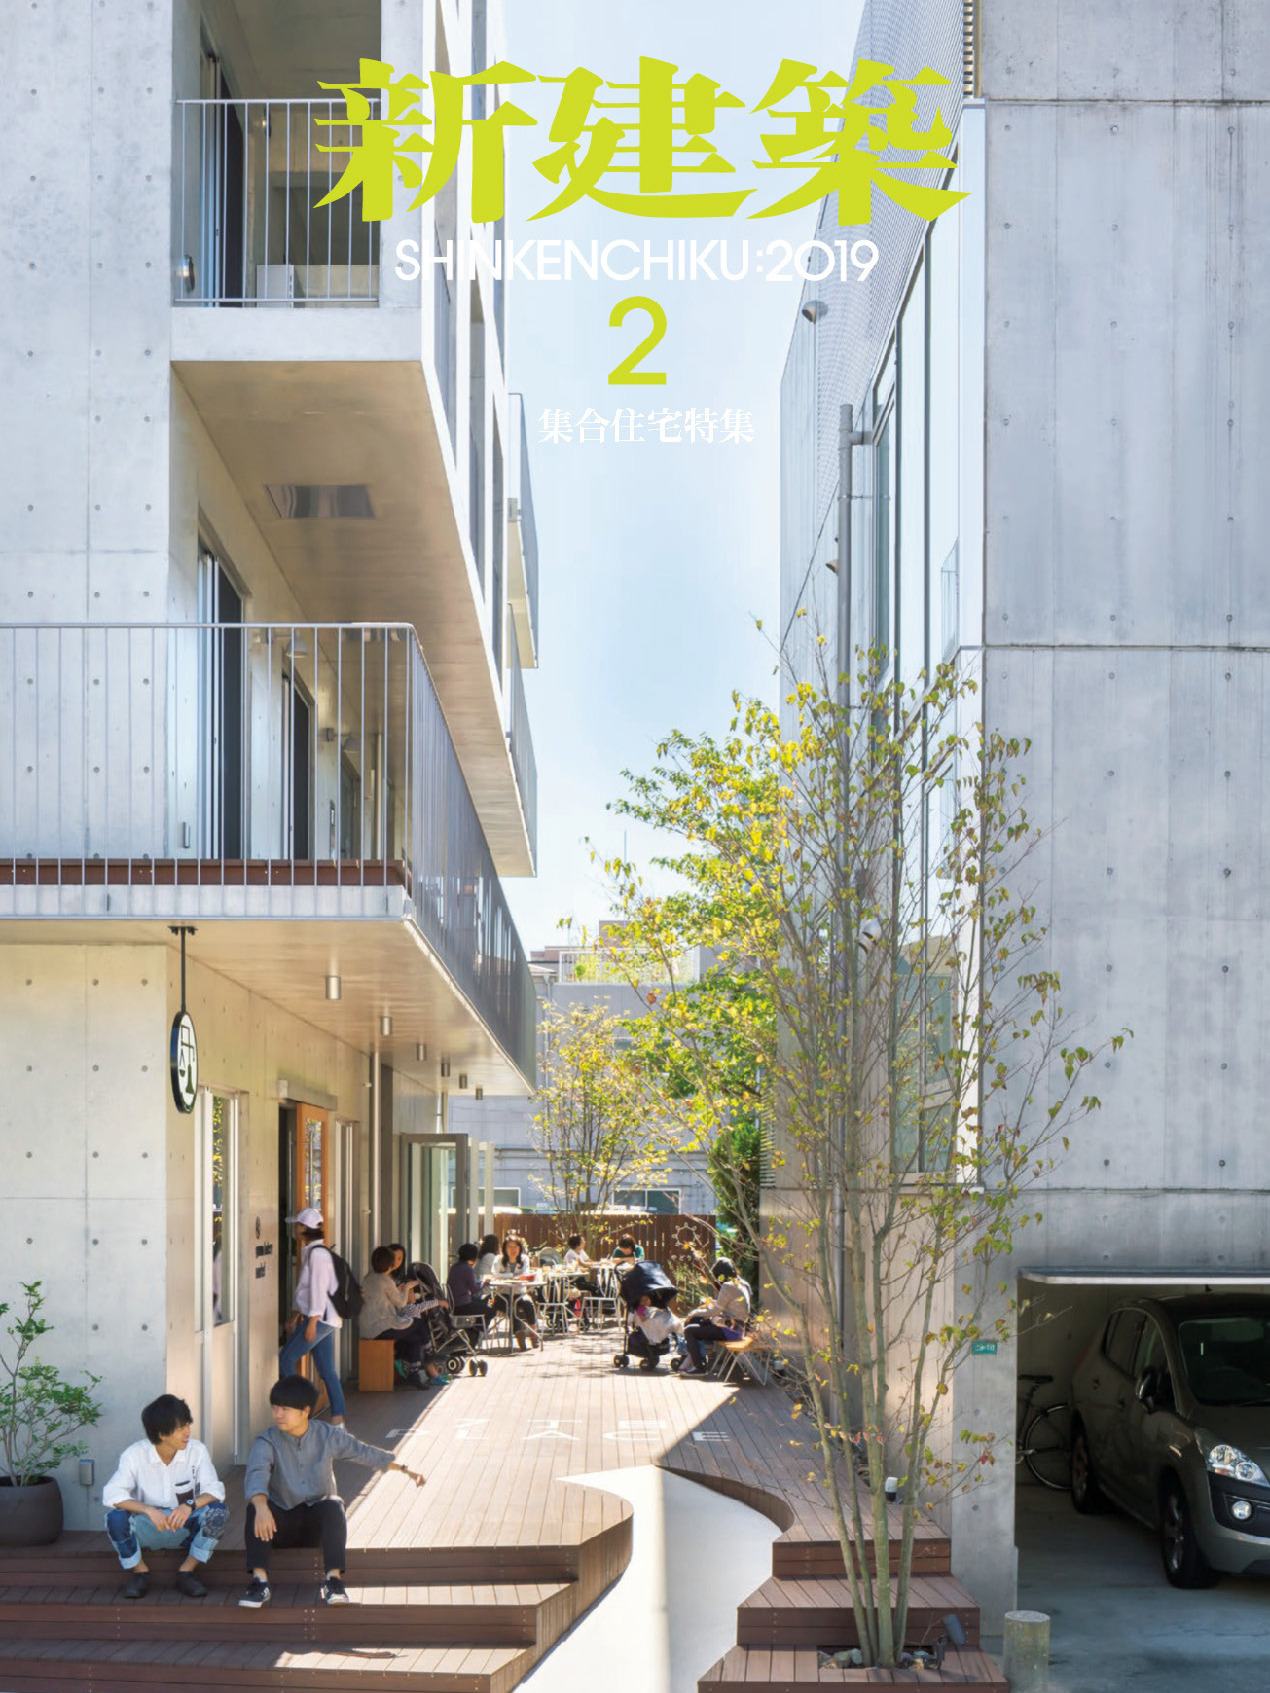 《商店建筑Shotenkenchiku》日本版店面室内设计杂志2019年02月号